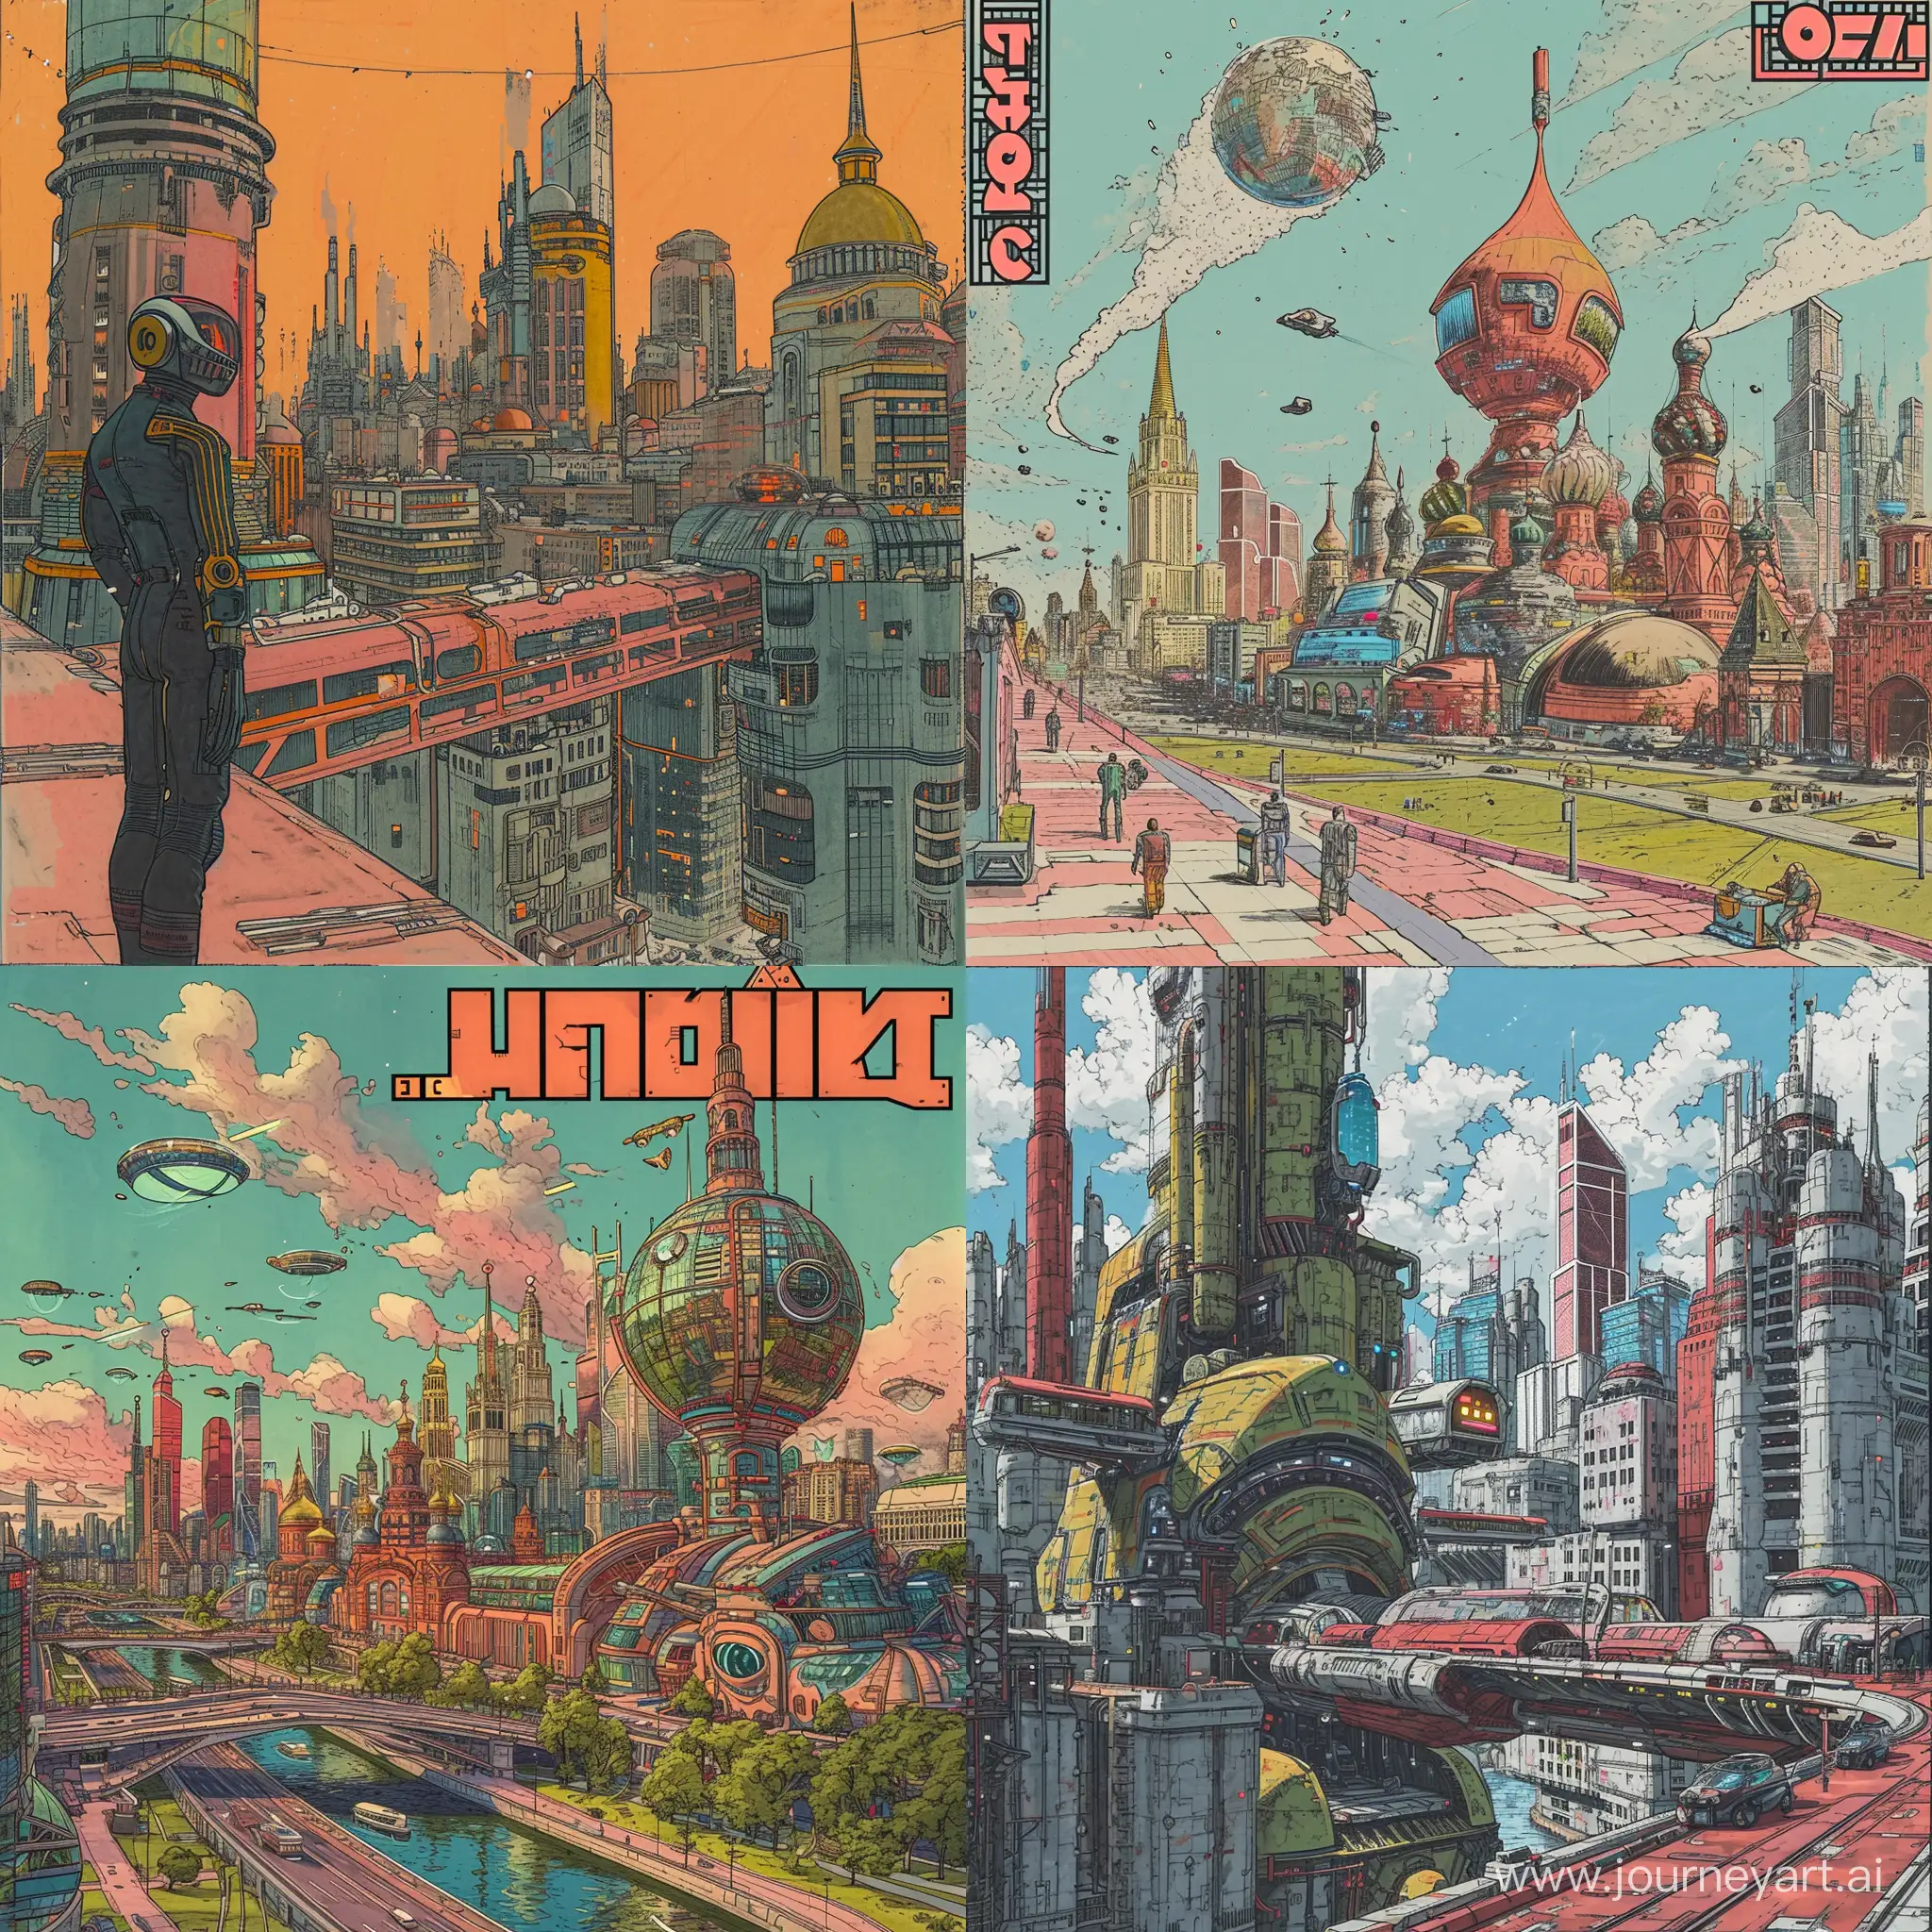 Futuristic-Moscow-in-Cinematic-Colors-Postcyberpunk-Biopunk-Nanopunk-Art-2020s